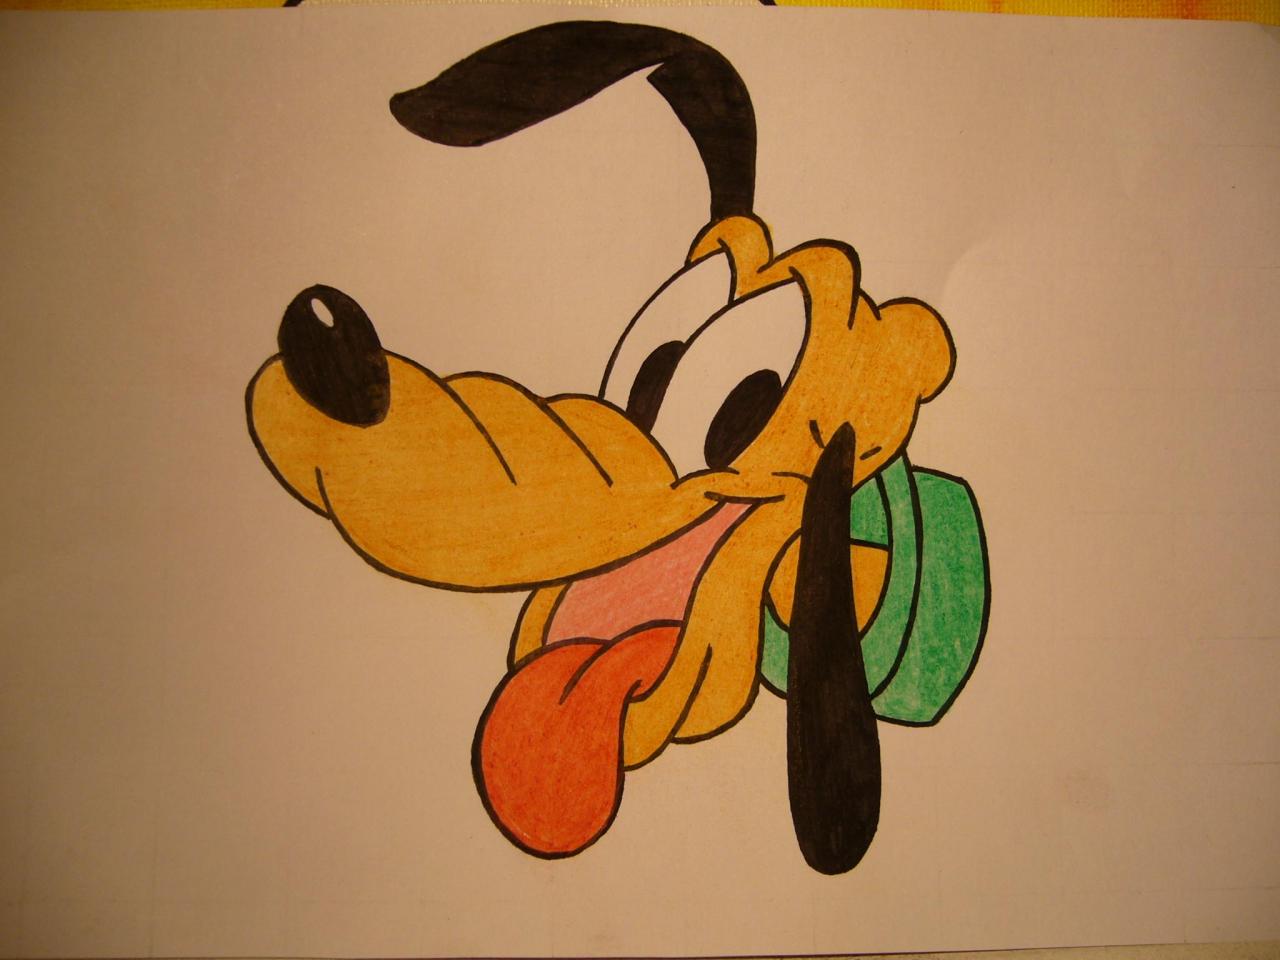 Cómo dibujar la cara de Pluto - 11 pasos, dibujos de Pluto, como dibujar Pluto paso a paso